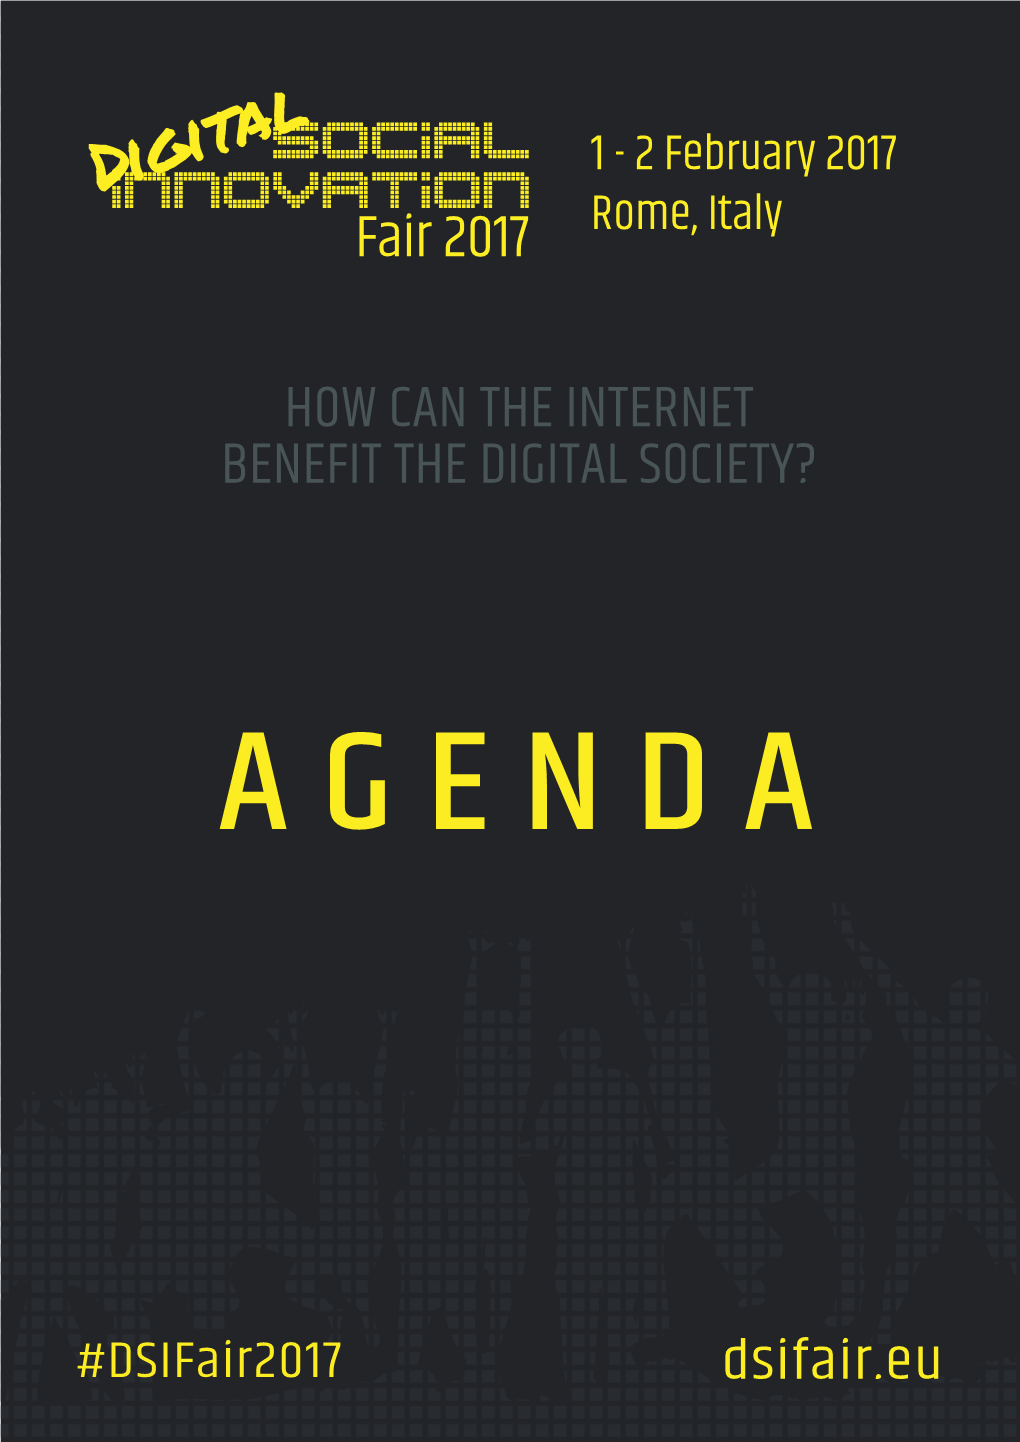 Download the DSI Fair 2017 Agenda Here (PDF)